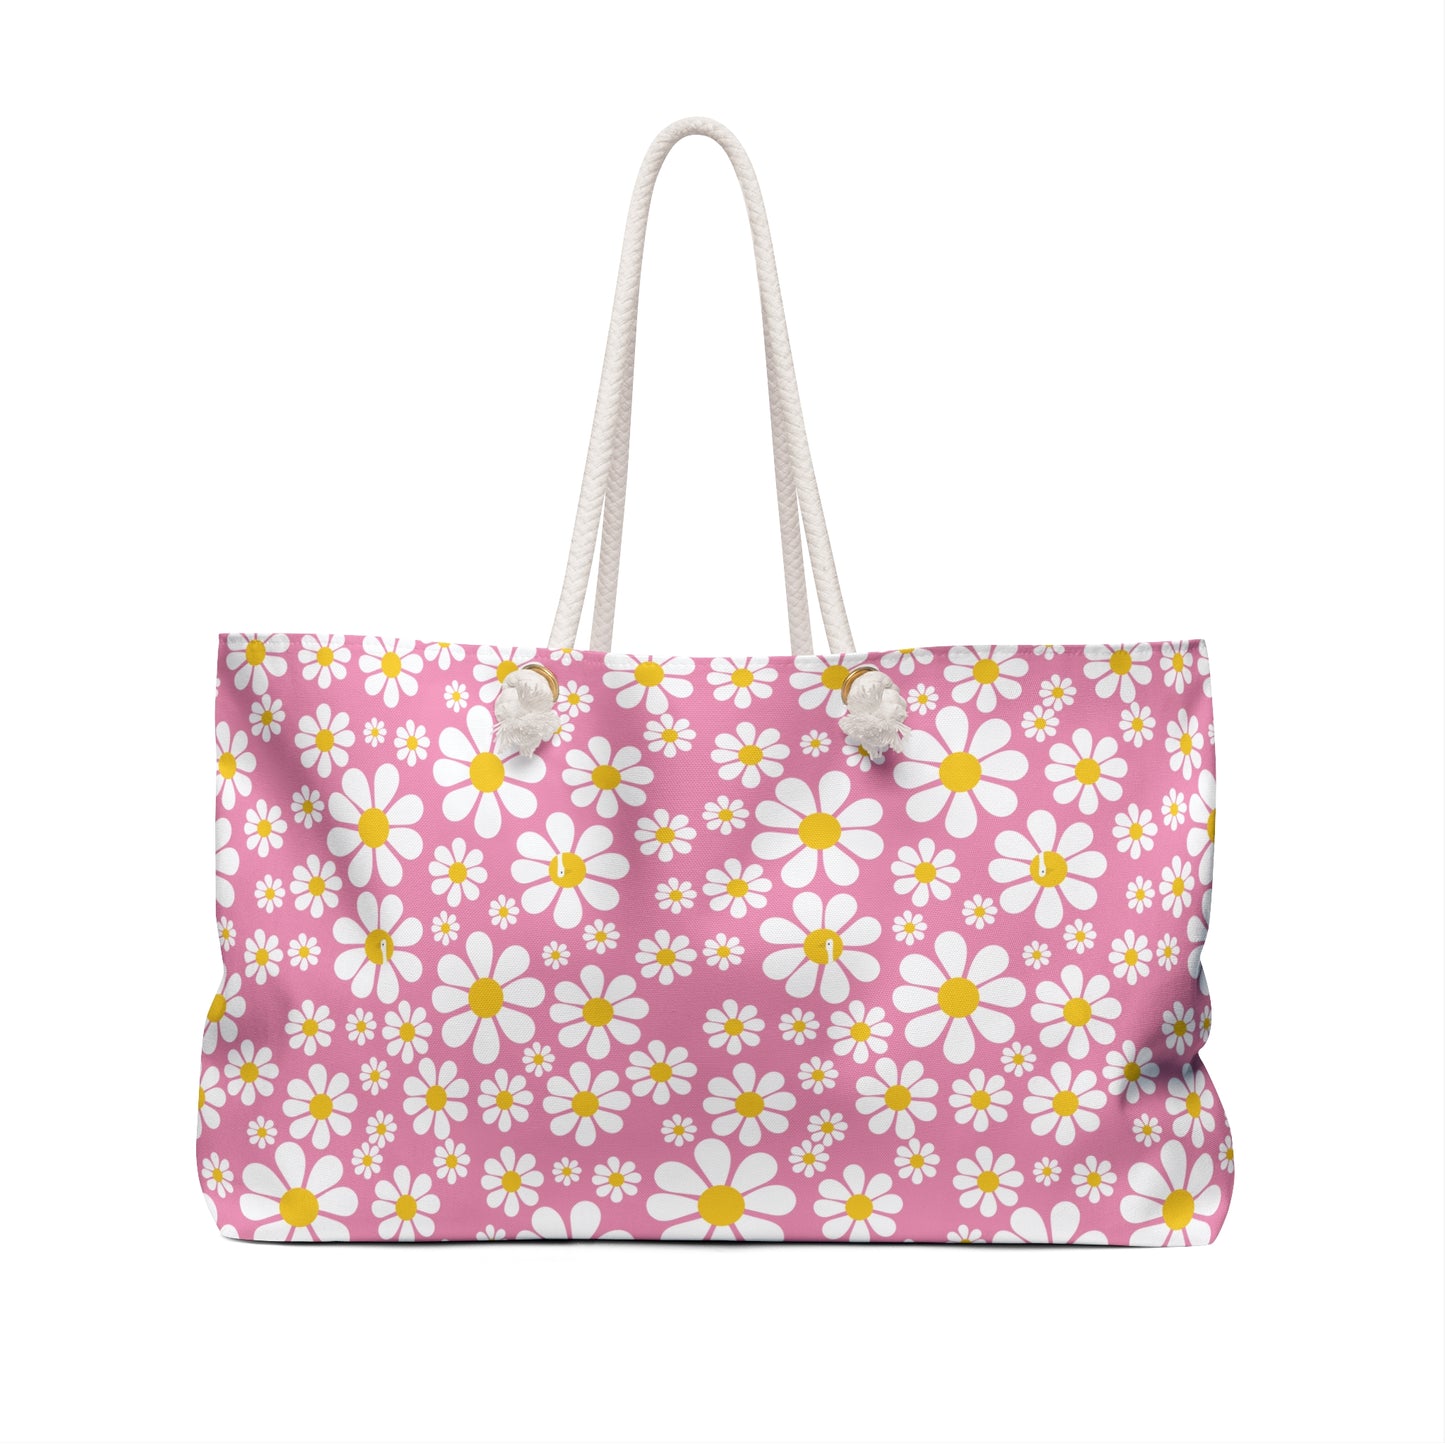 Ducks in Daisies - Small print - Supreme Pink f698bd - Weekender Bag